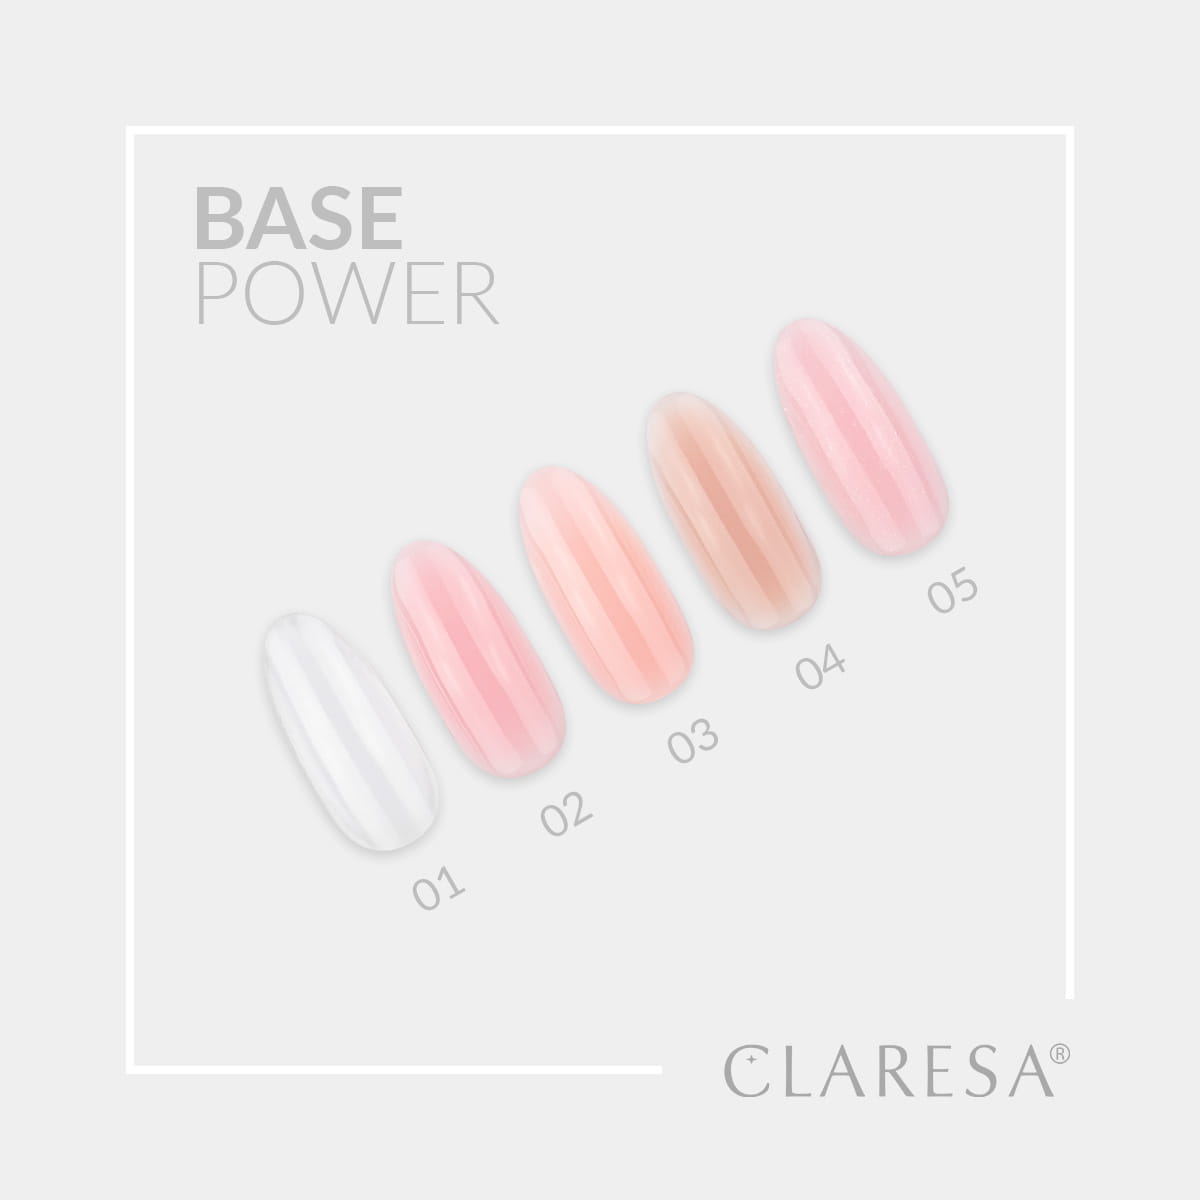 Claresa-Power-Base.jpg